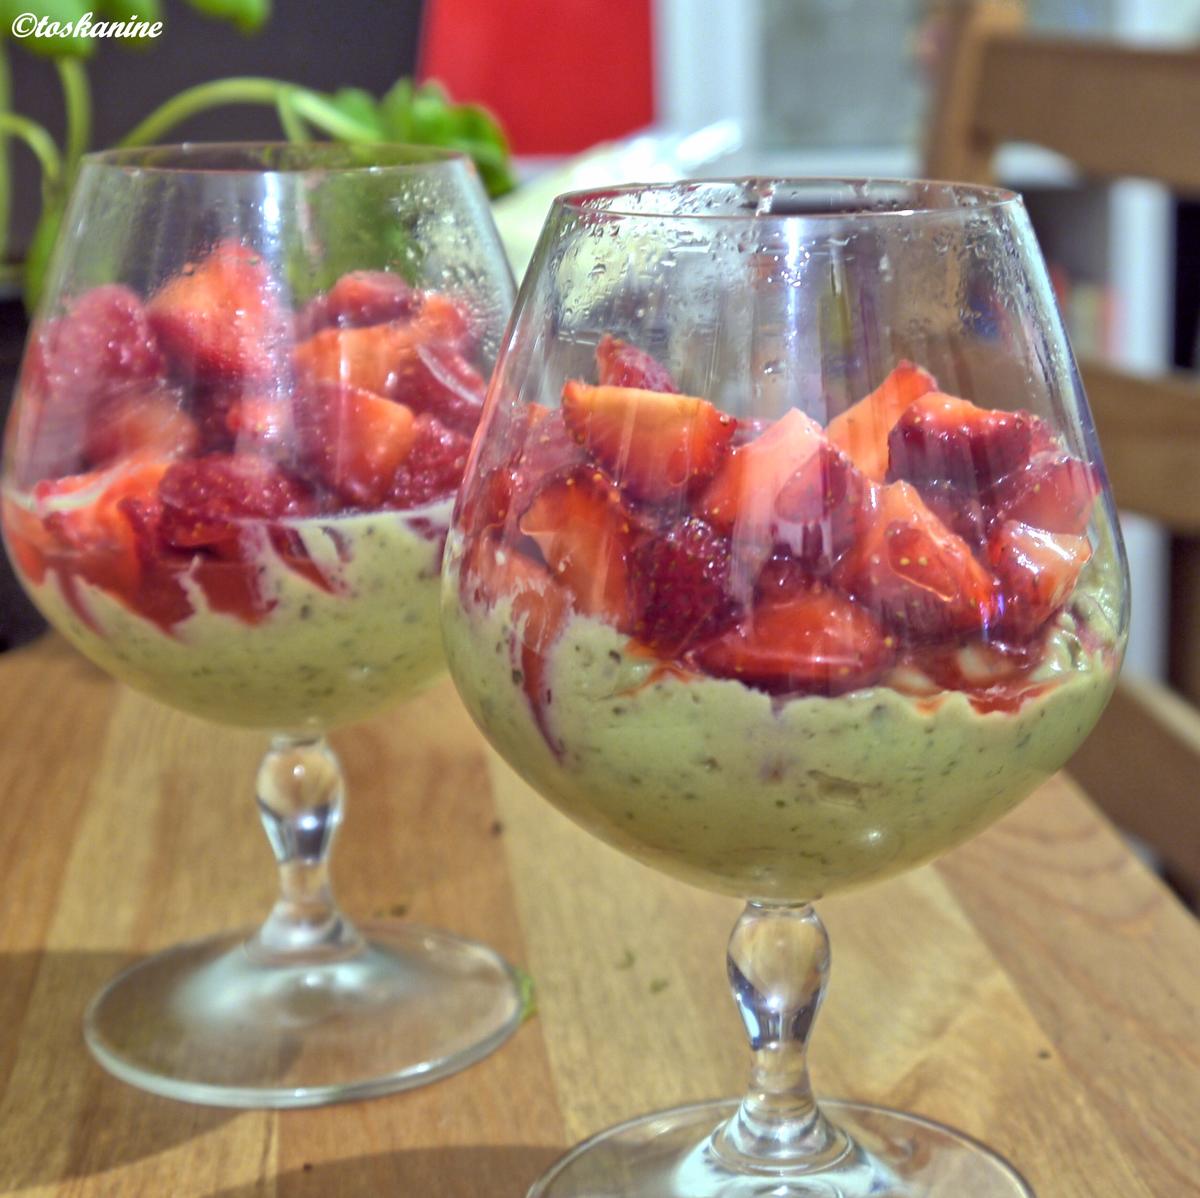 Avocado-Ricotto-Creme mit Zitronenmelisse und marinierte Erdbeeren - Rezept - Bild Nr. 182